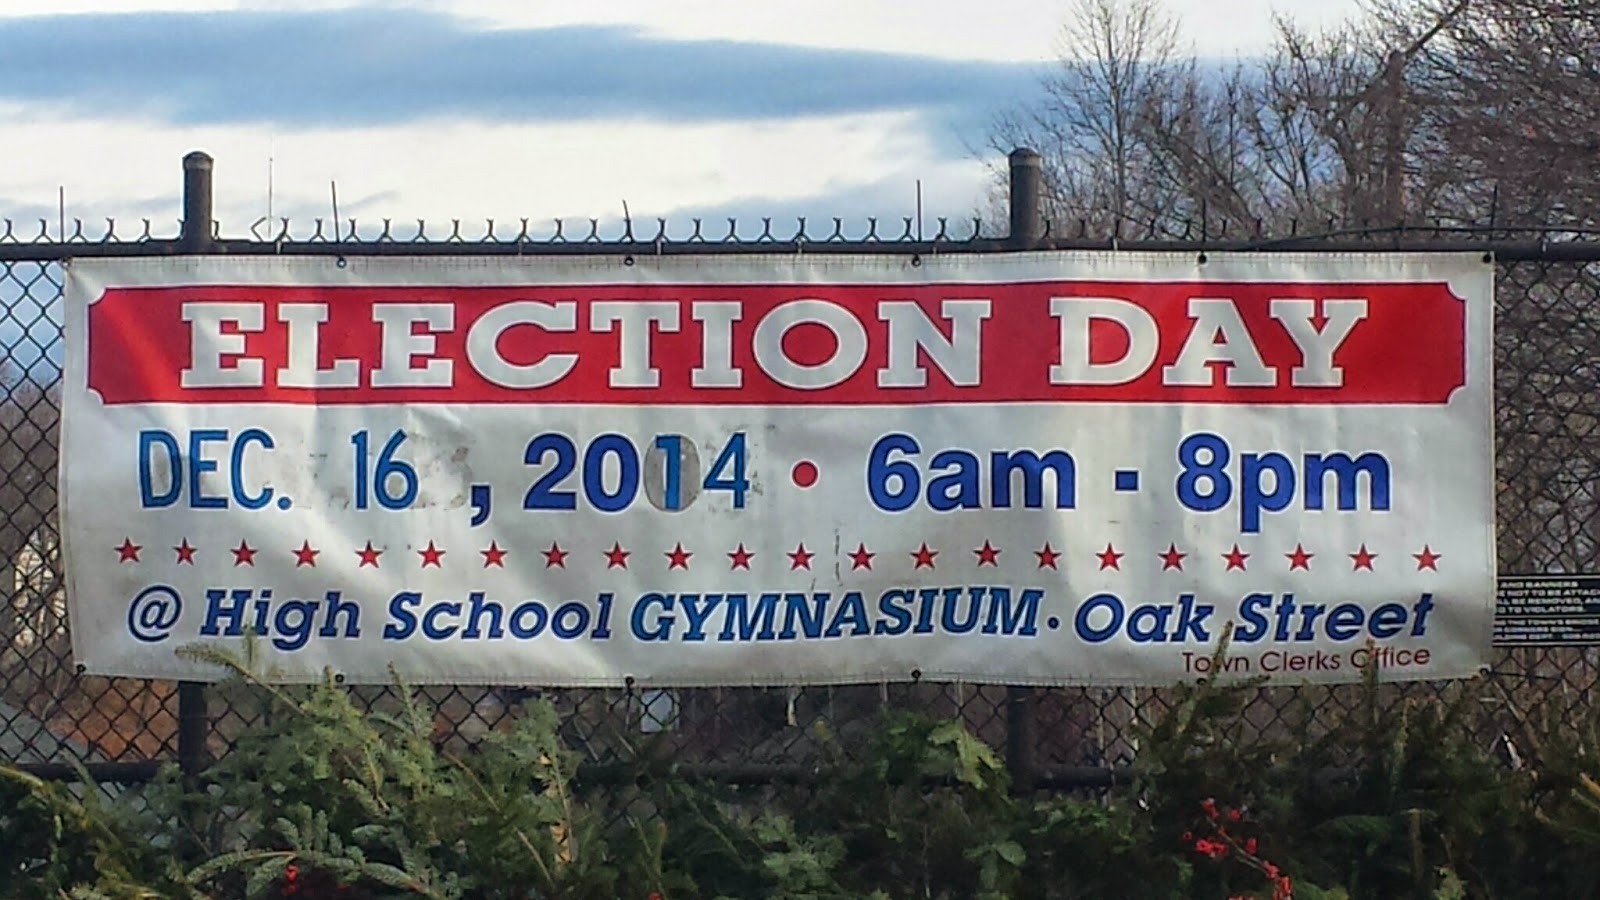 special election - Dec 16, 2014